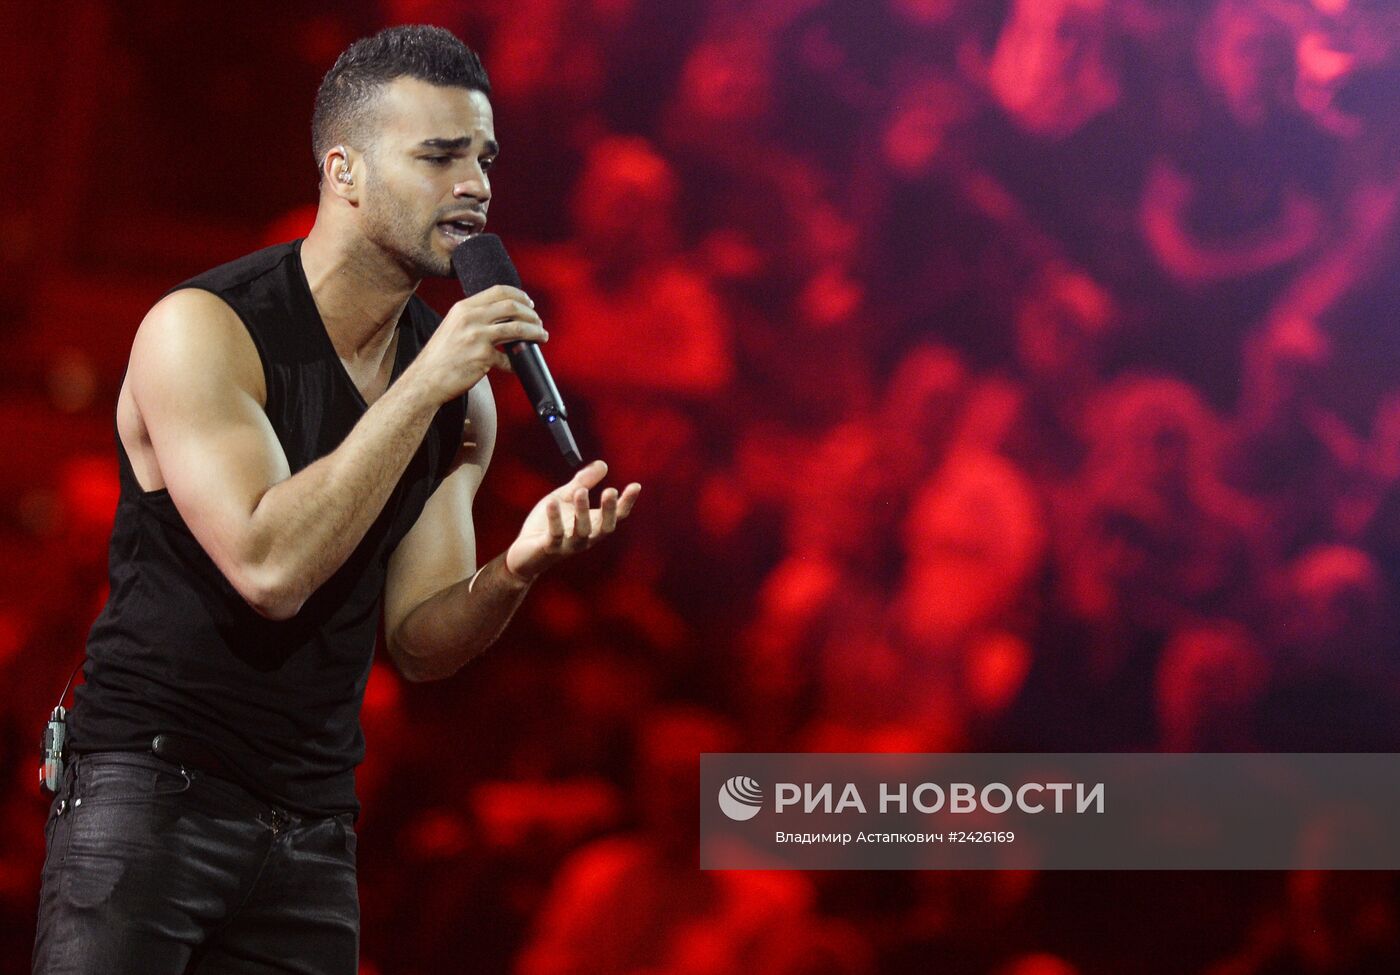 Репетиция перед финалом международного конкурса песни "Евровидения-2014"